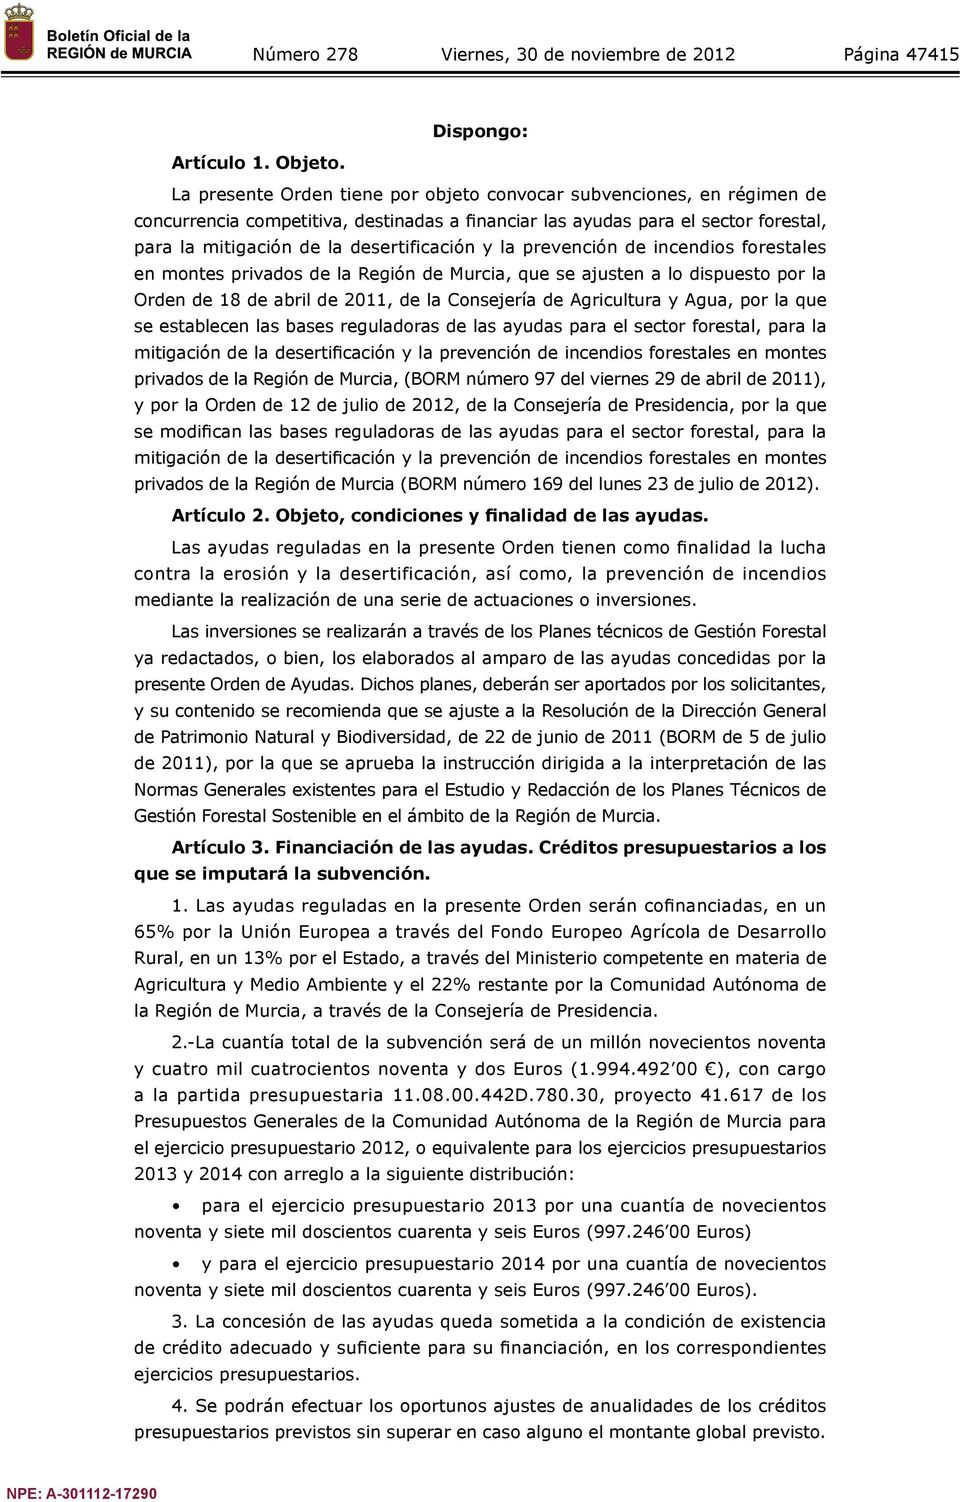 la prevención de incendios forestales en montes privados de la Región de Murcia, que se ajusten a lo dispuesto por la Orden de 18 de abril de 2011, de la Consejería de Agricultura y Agua, por la que